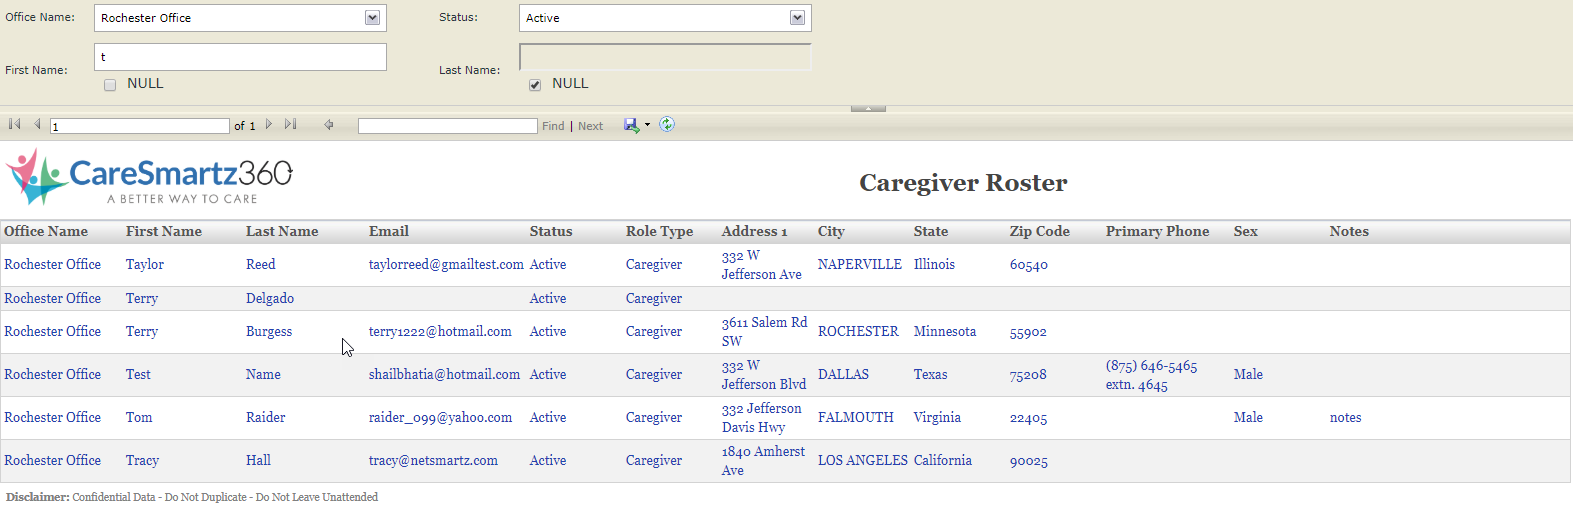 Caregiver Roster